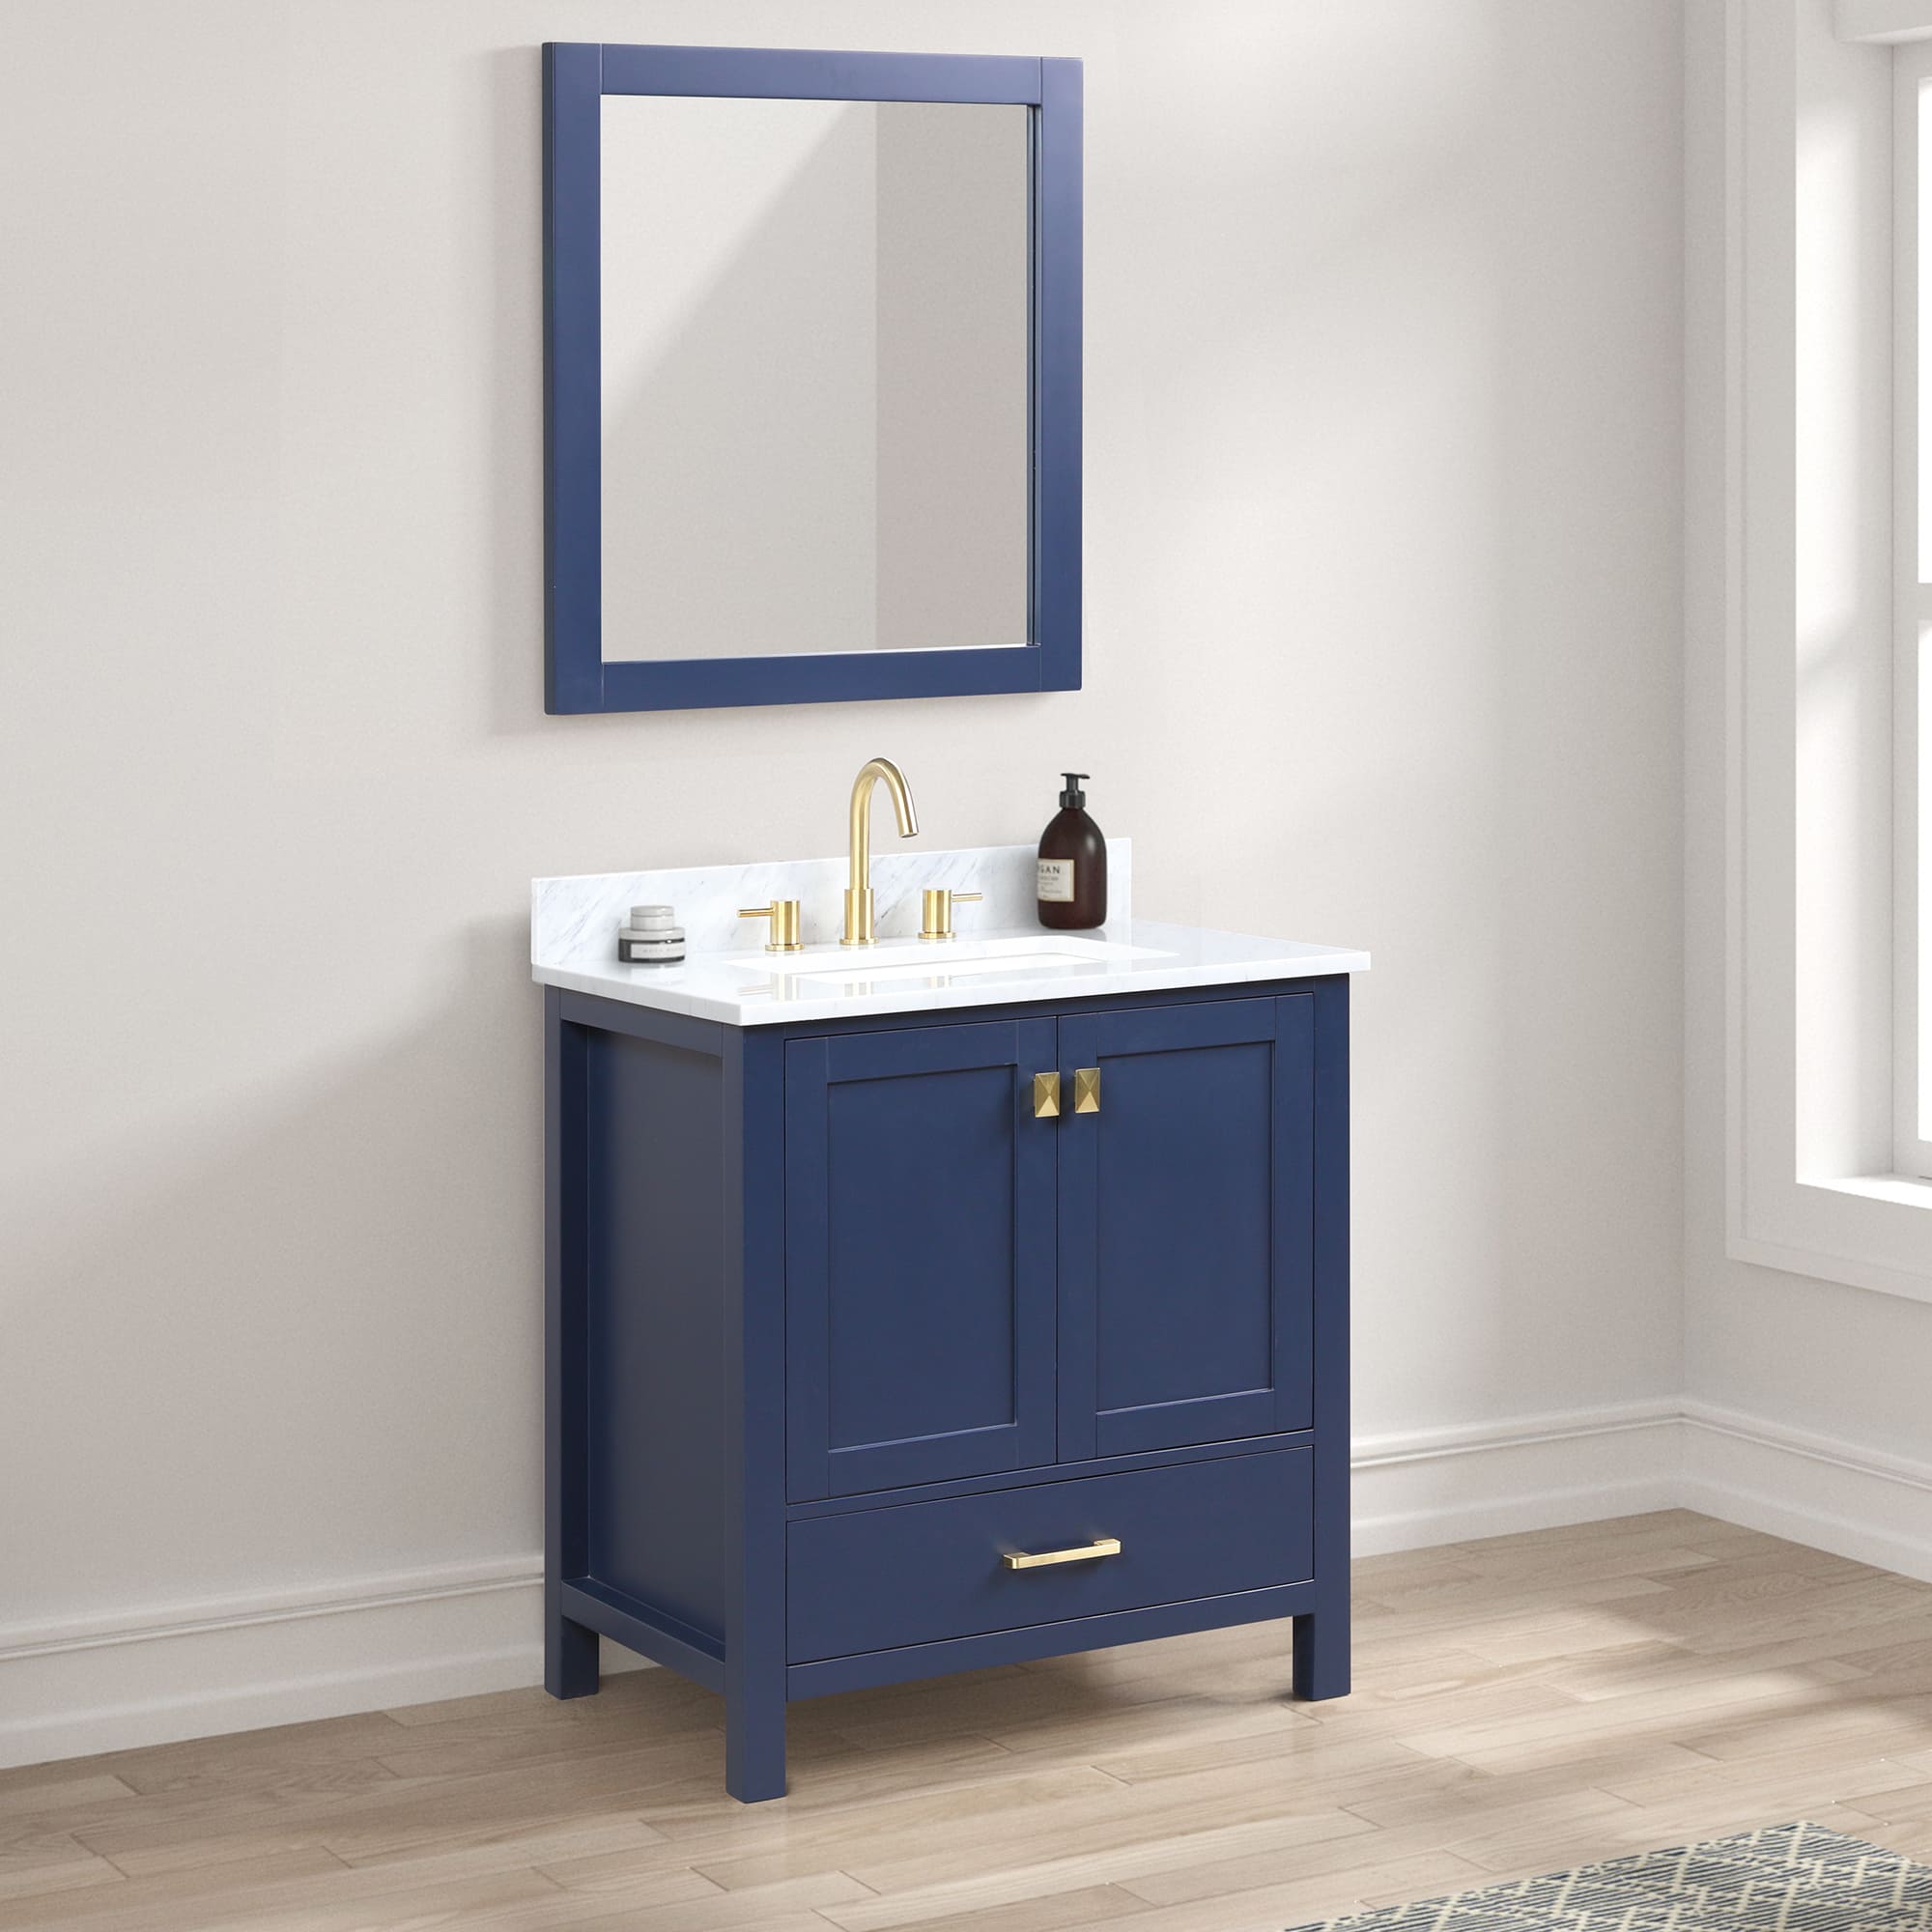 Geneva 30" Bathroom Vanity  #size_30"  #color_navy blue